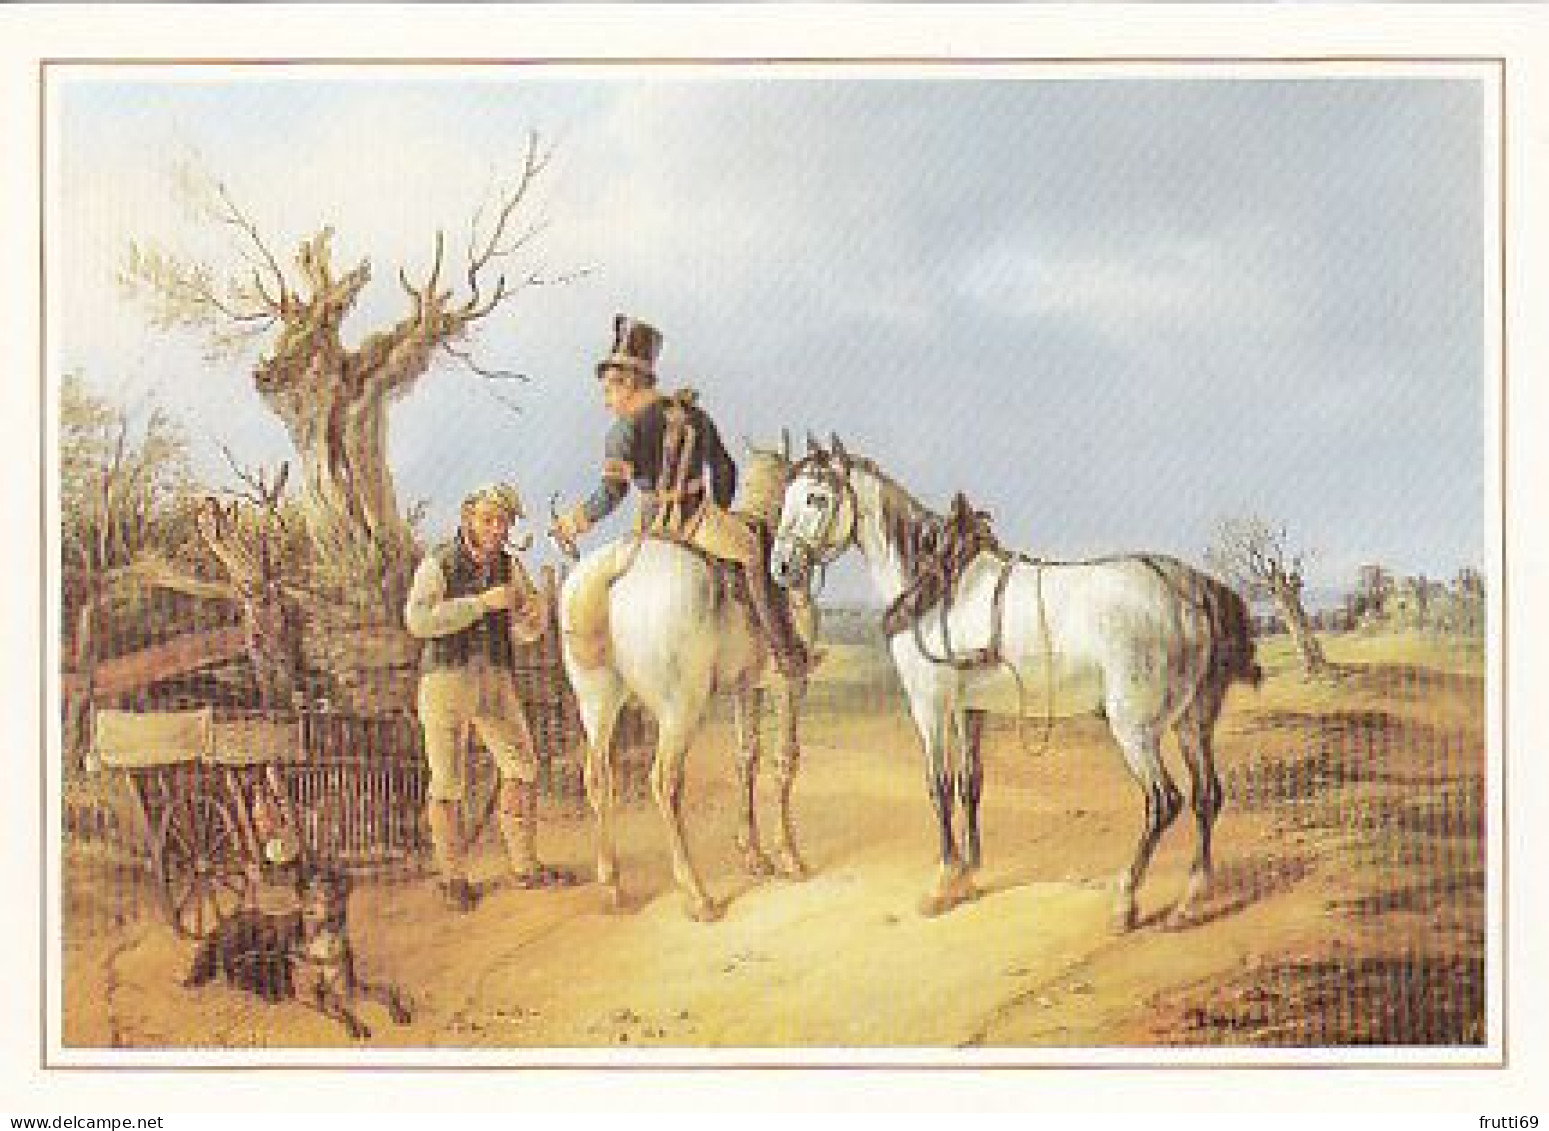 AK 216130 POST - Preußischer Postillion Und Federviehhändler - Ölgemälde Von Joh. H. K. Schulz 1832 - Poste & Postini